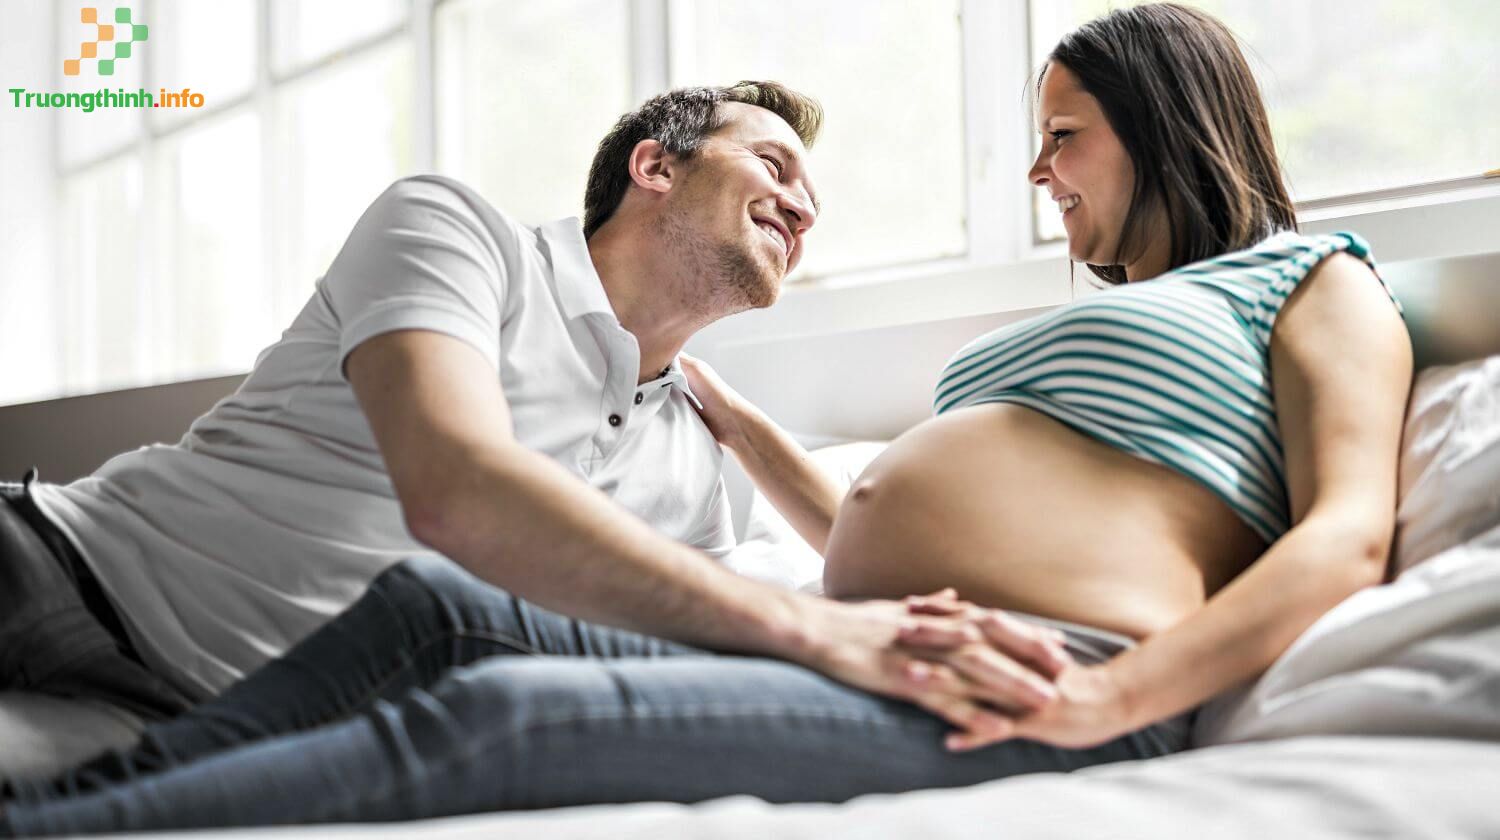                       Quan hệ khi mang thai có nguy hiểm không? Cách quan hệ an toàn khi mang thai